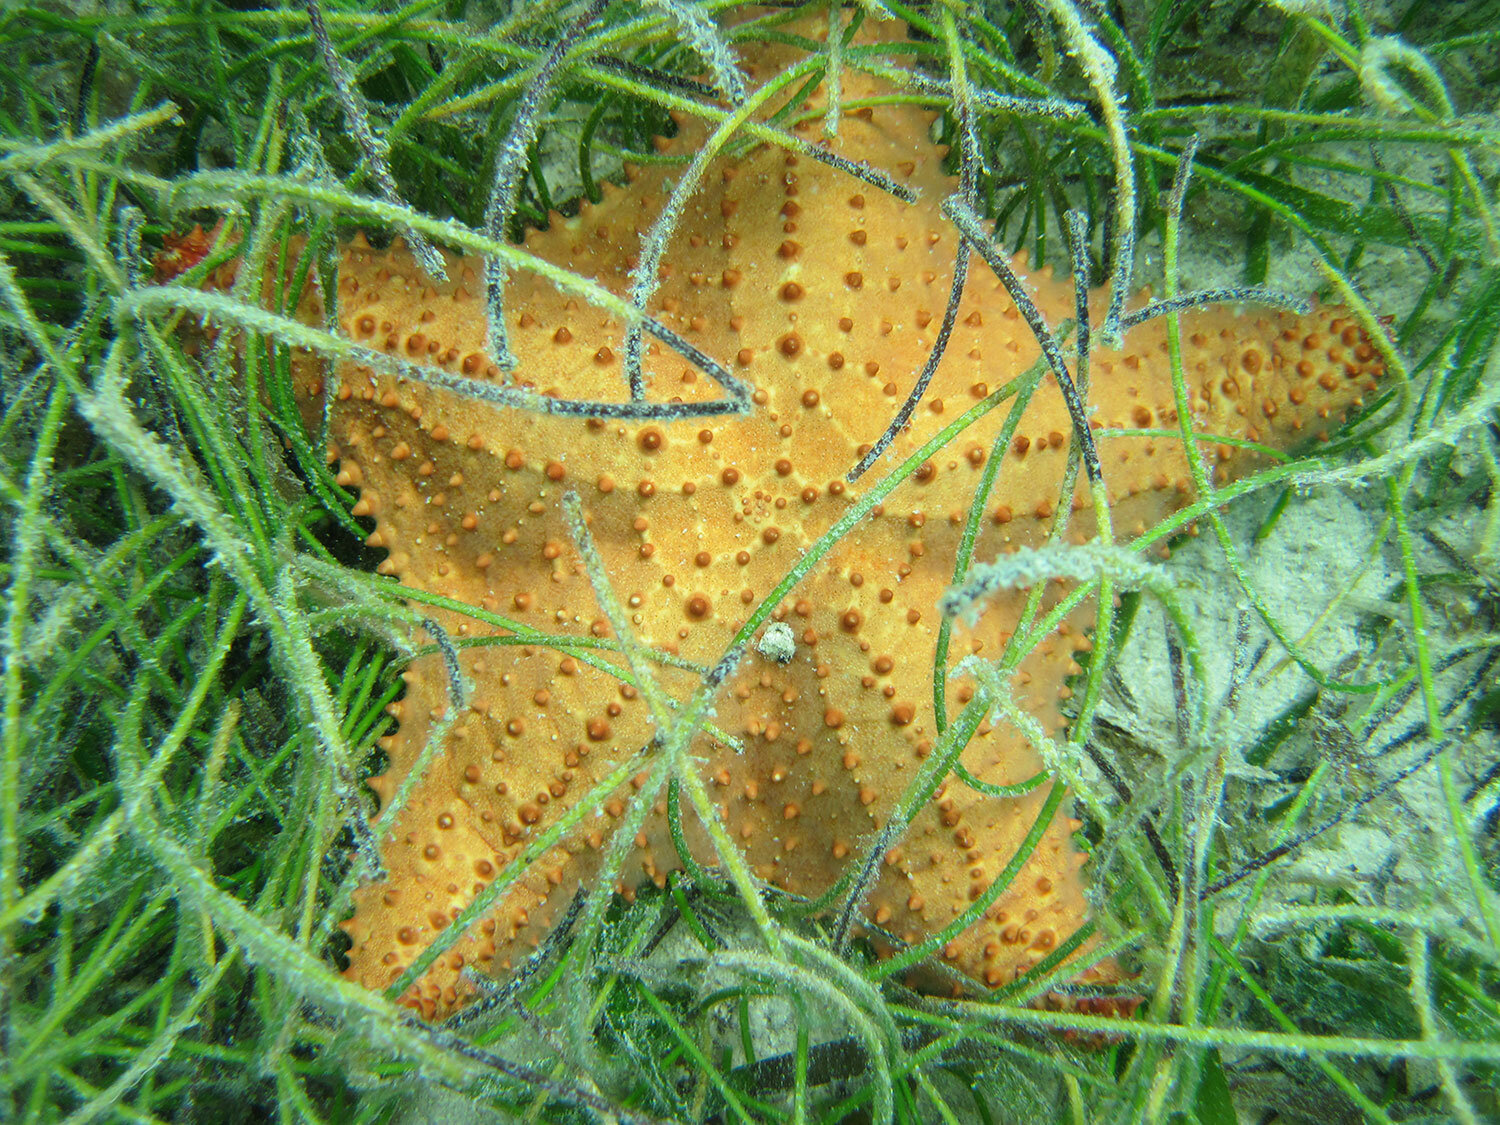 starfishwithgrass.jpg